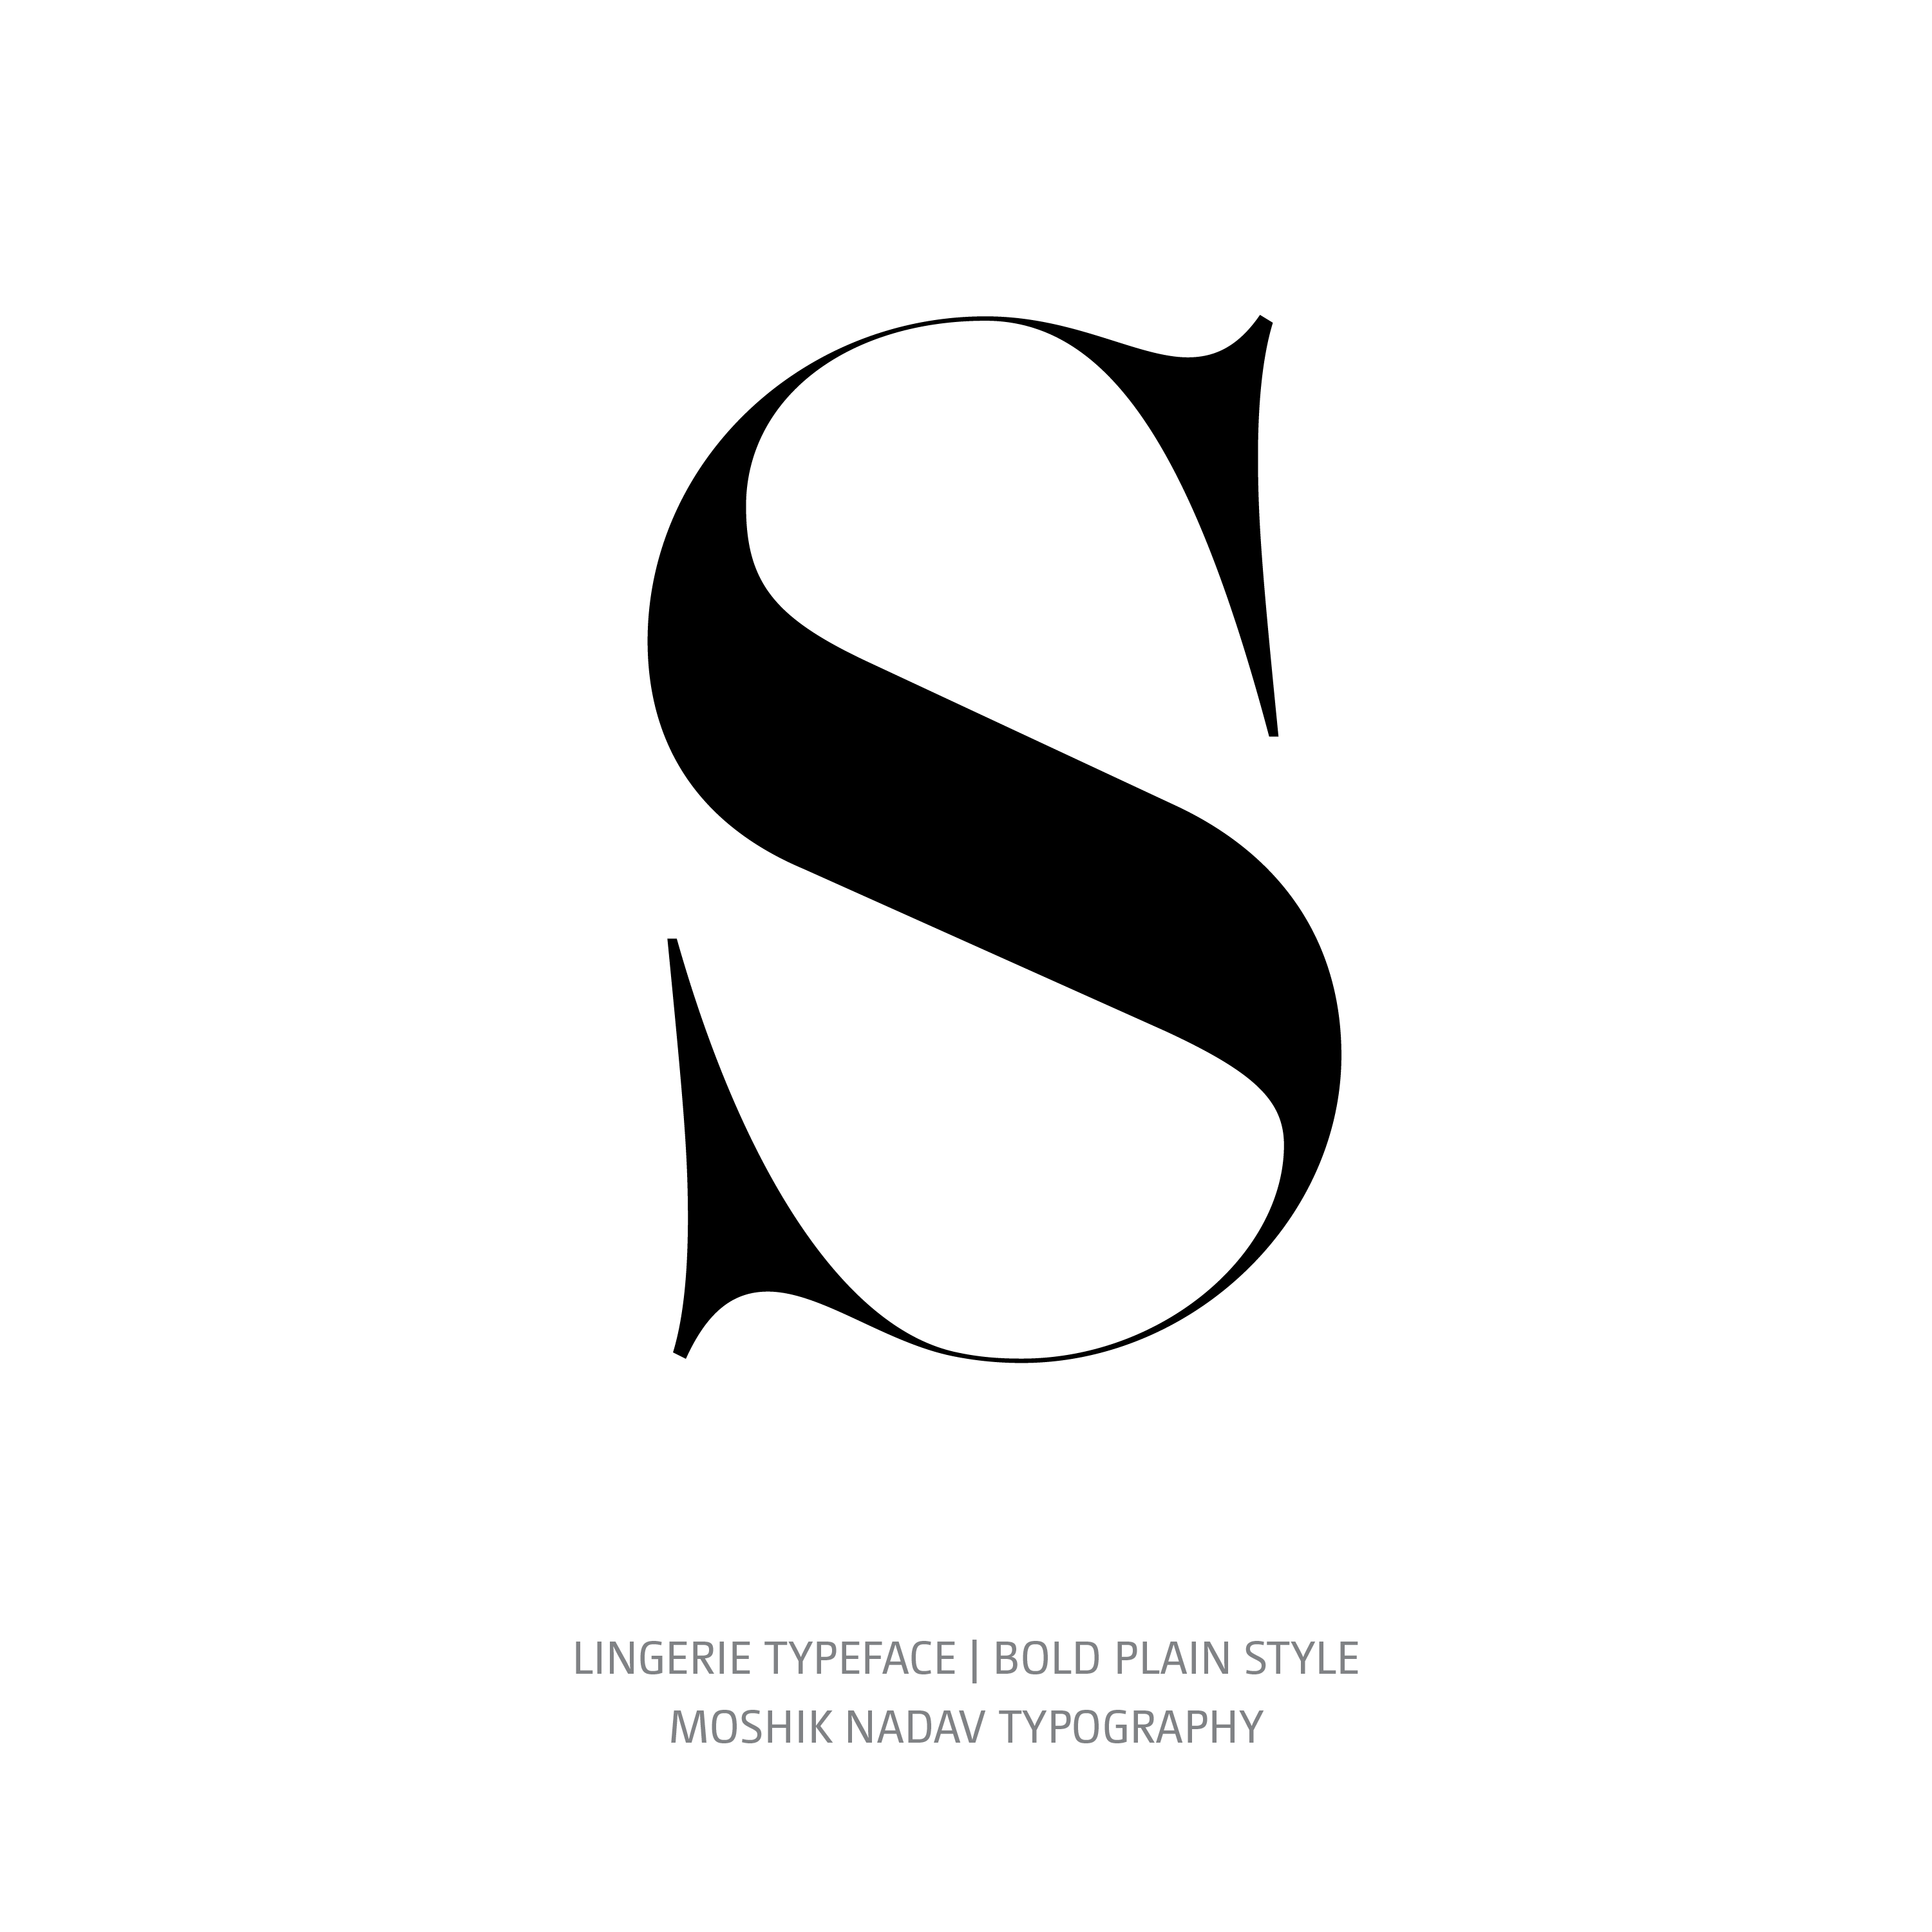 Lingerie Typeface Bold Plain S